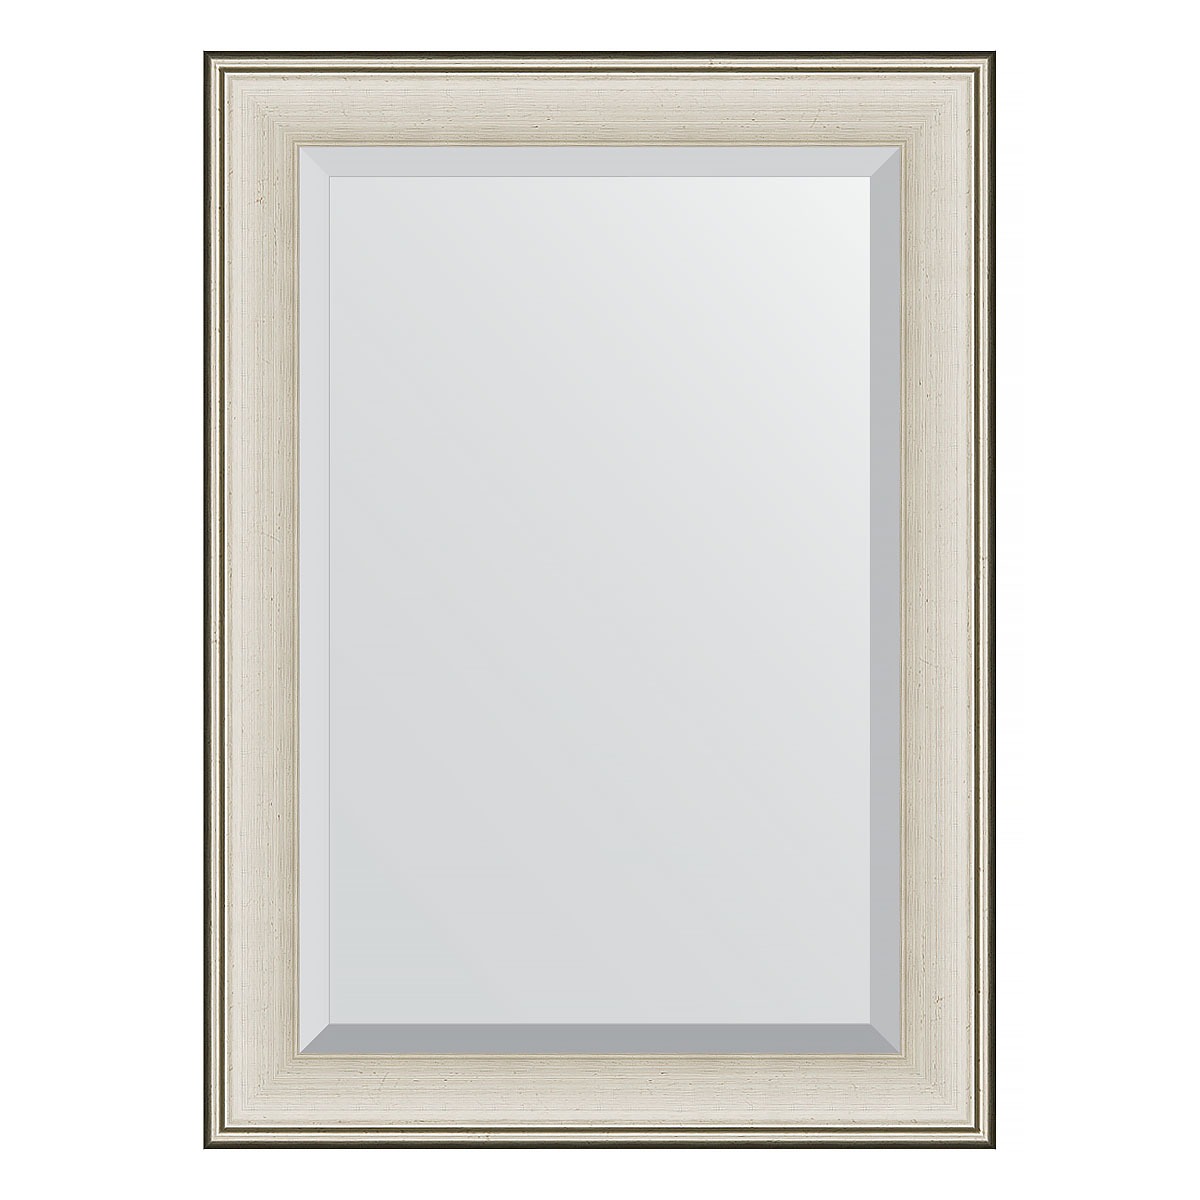 Зеркало с фацетом в багетной раме Evoform травленое серебро 95 мм 78х108 см зеркало с фацетом в багетной раме evoform травленое серебро 95 мм 78х108 см